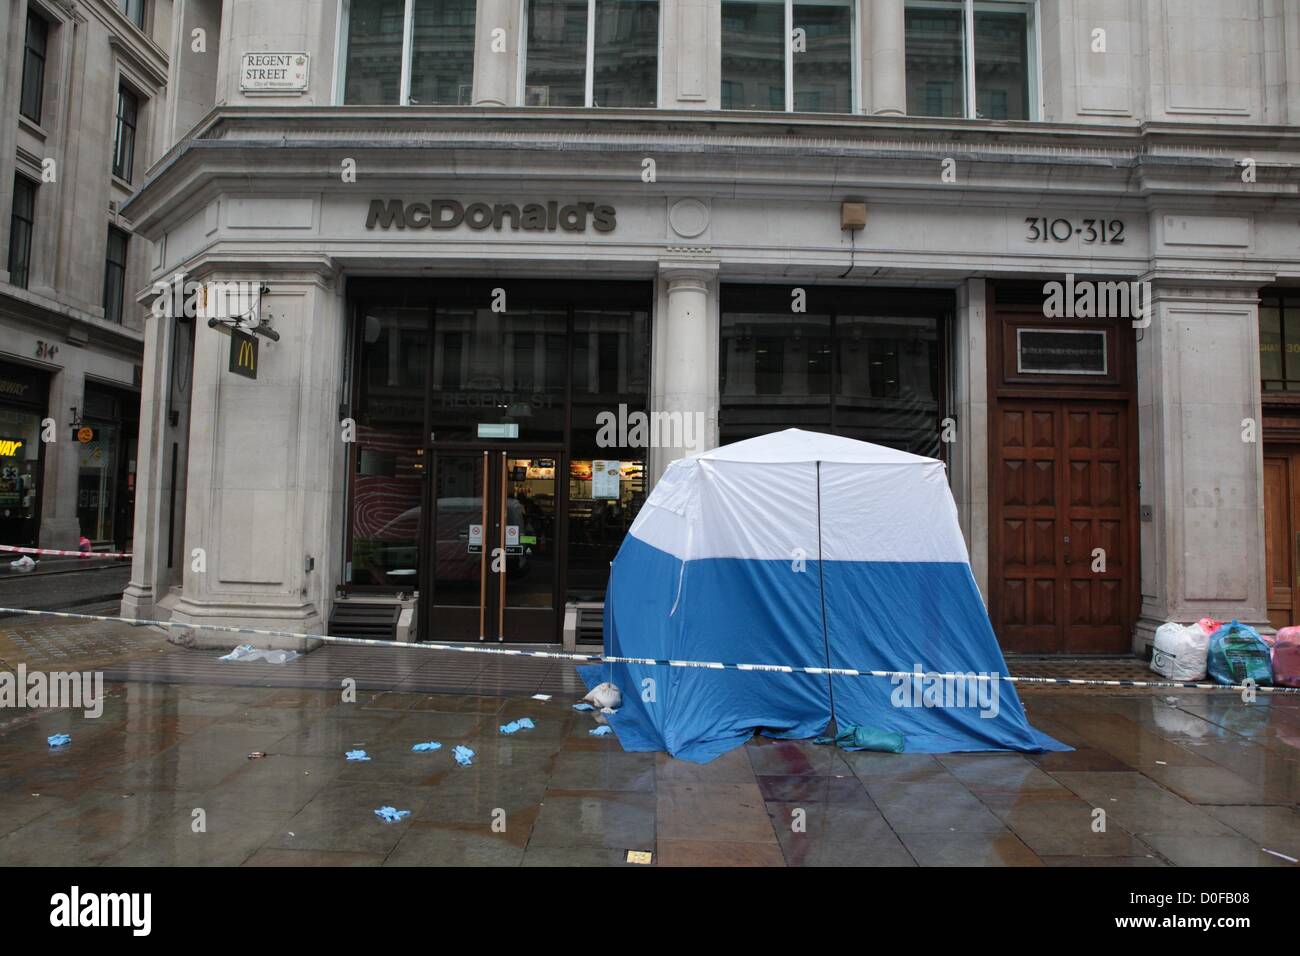 Royaume-uni, Londres, 24 novembre 2012. Une tente de médecine légale de la police se trouve à l'extérieur McDonalds sur la rue Regent à la suite d'un incident à 0320 samedi matin. Selon la police, deux personnes ont été poignardées et sont maintenant à l'hôpital où leurs blessures ont pensé à ne pas mettre la vie en danger. Banque D'Images